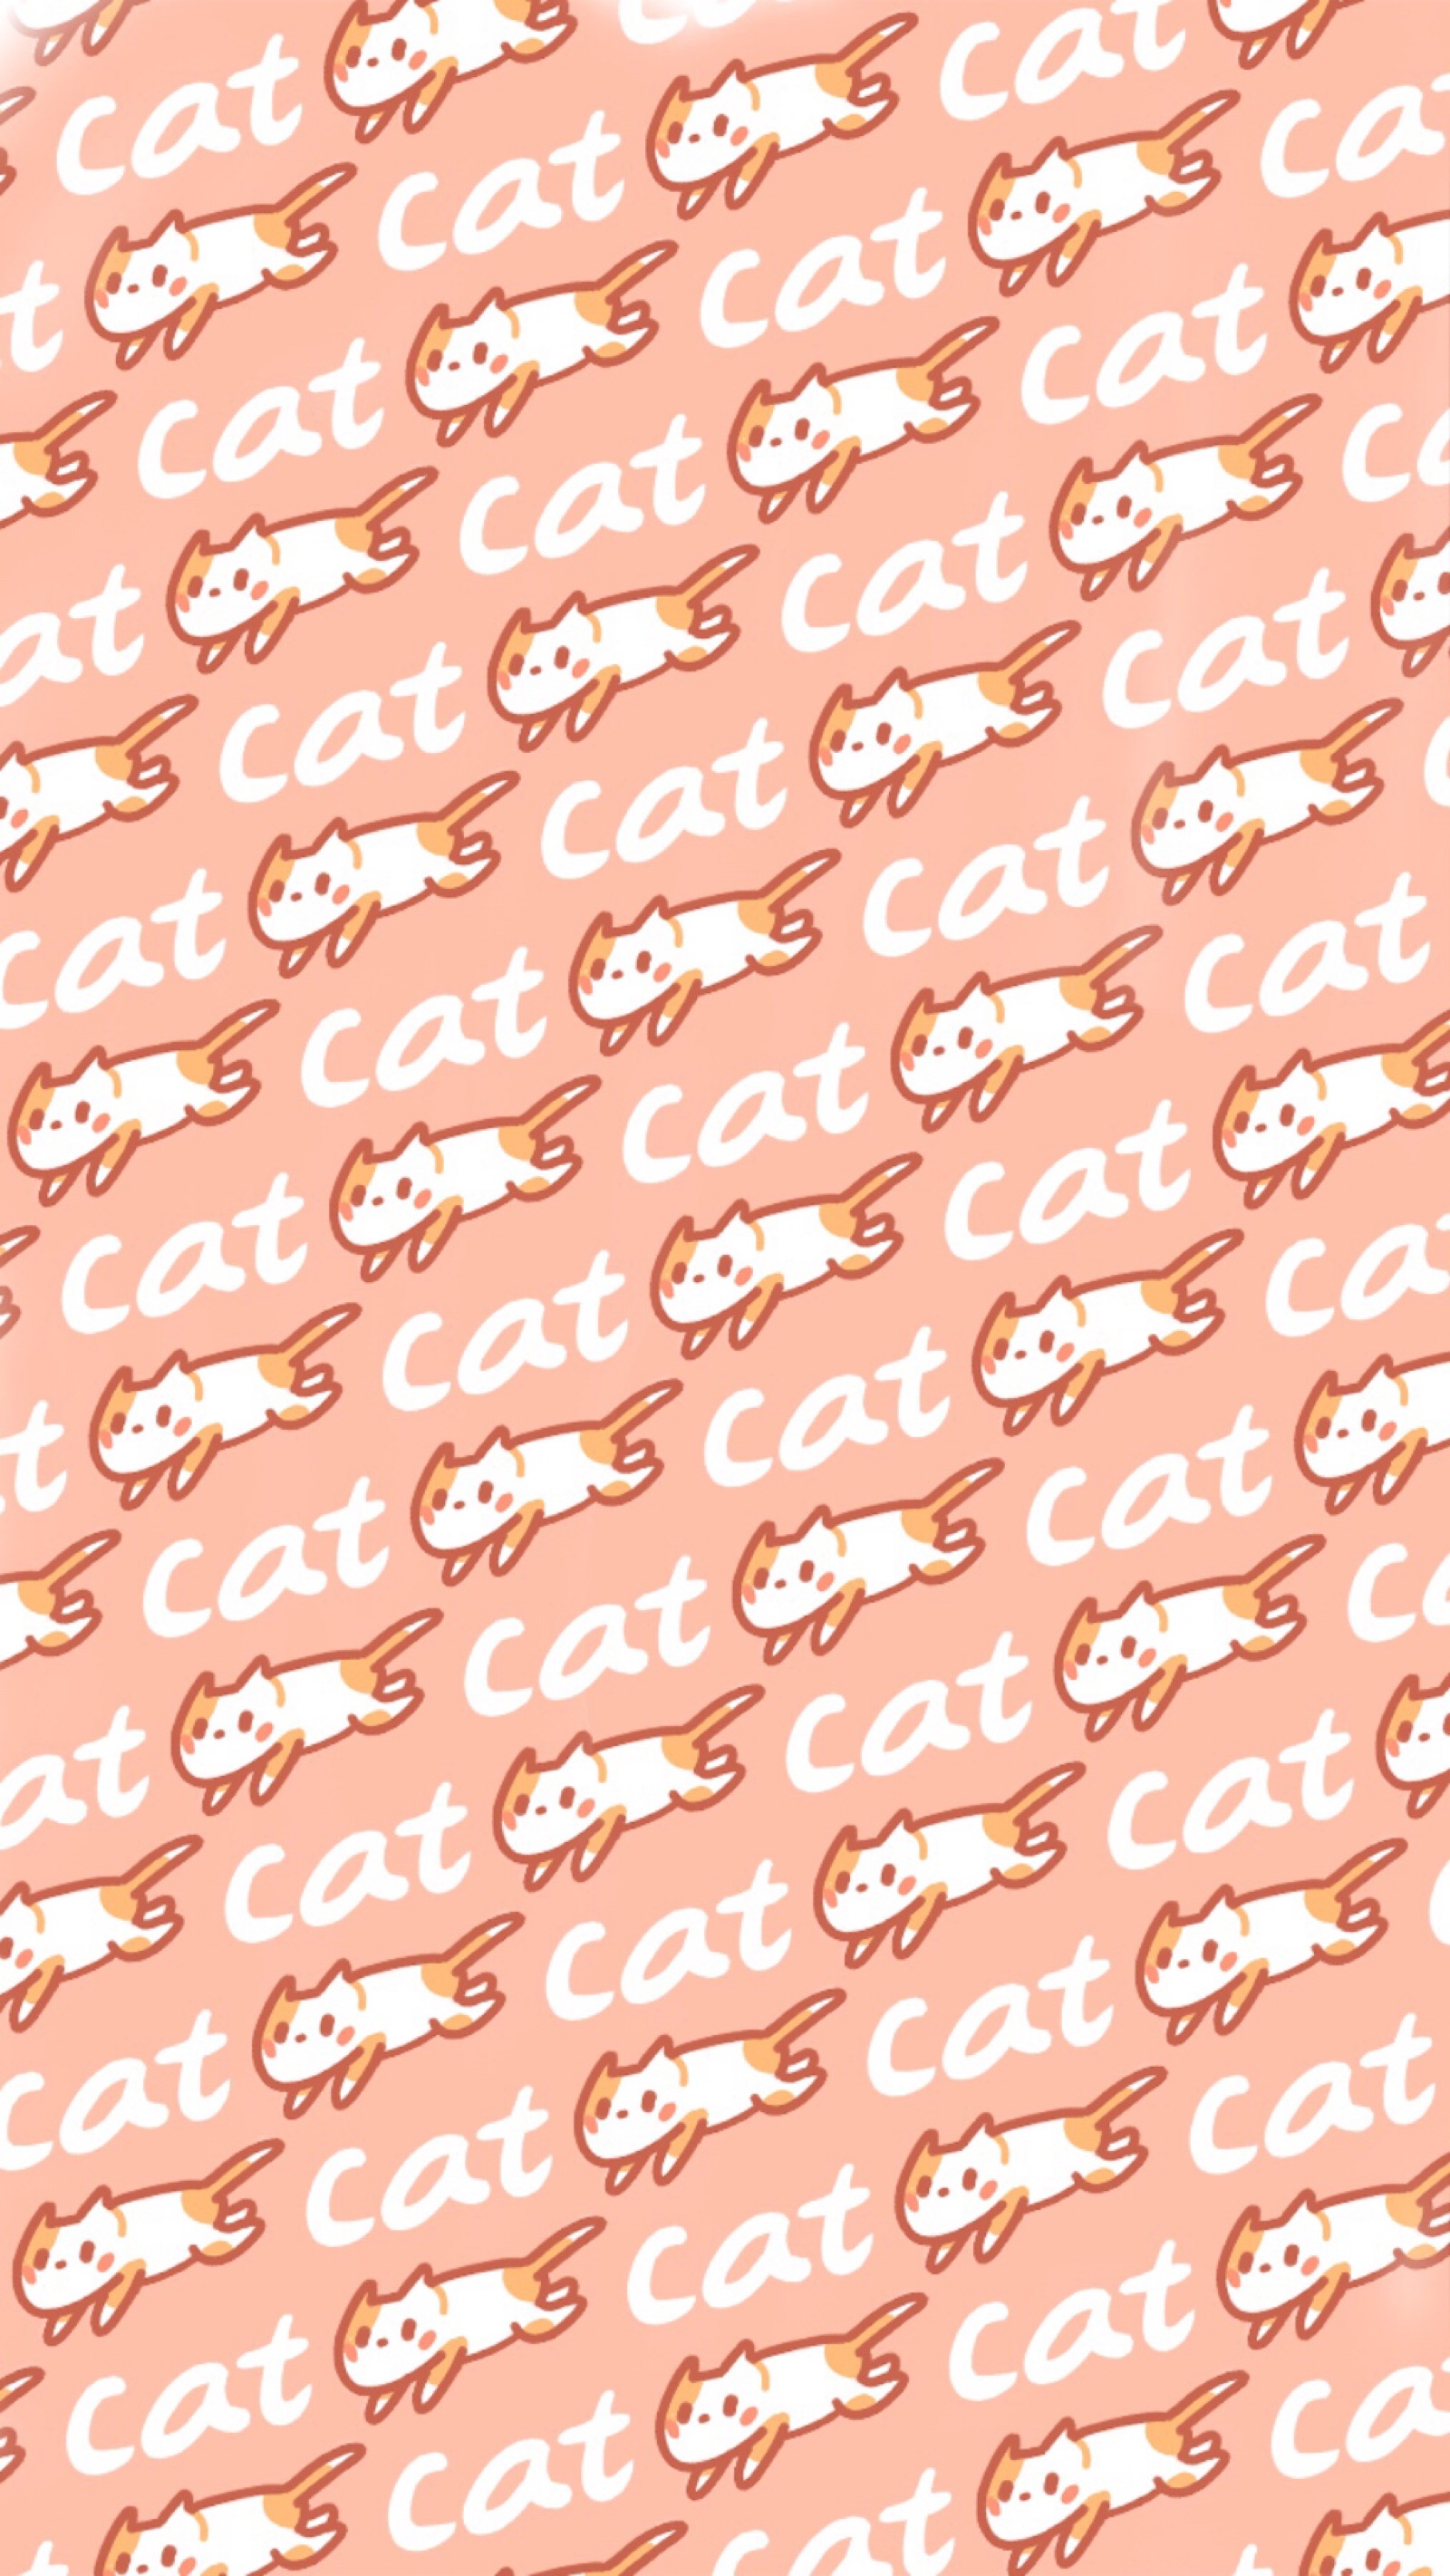 粉色猫猫摇可乐表情包图片